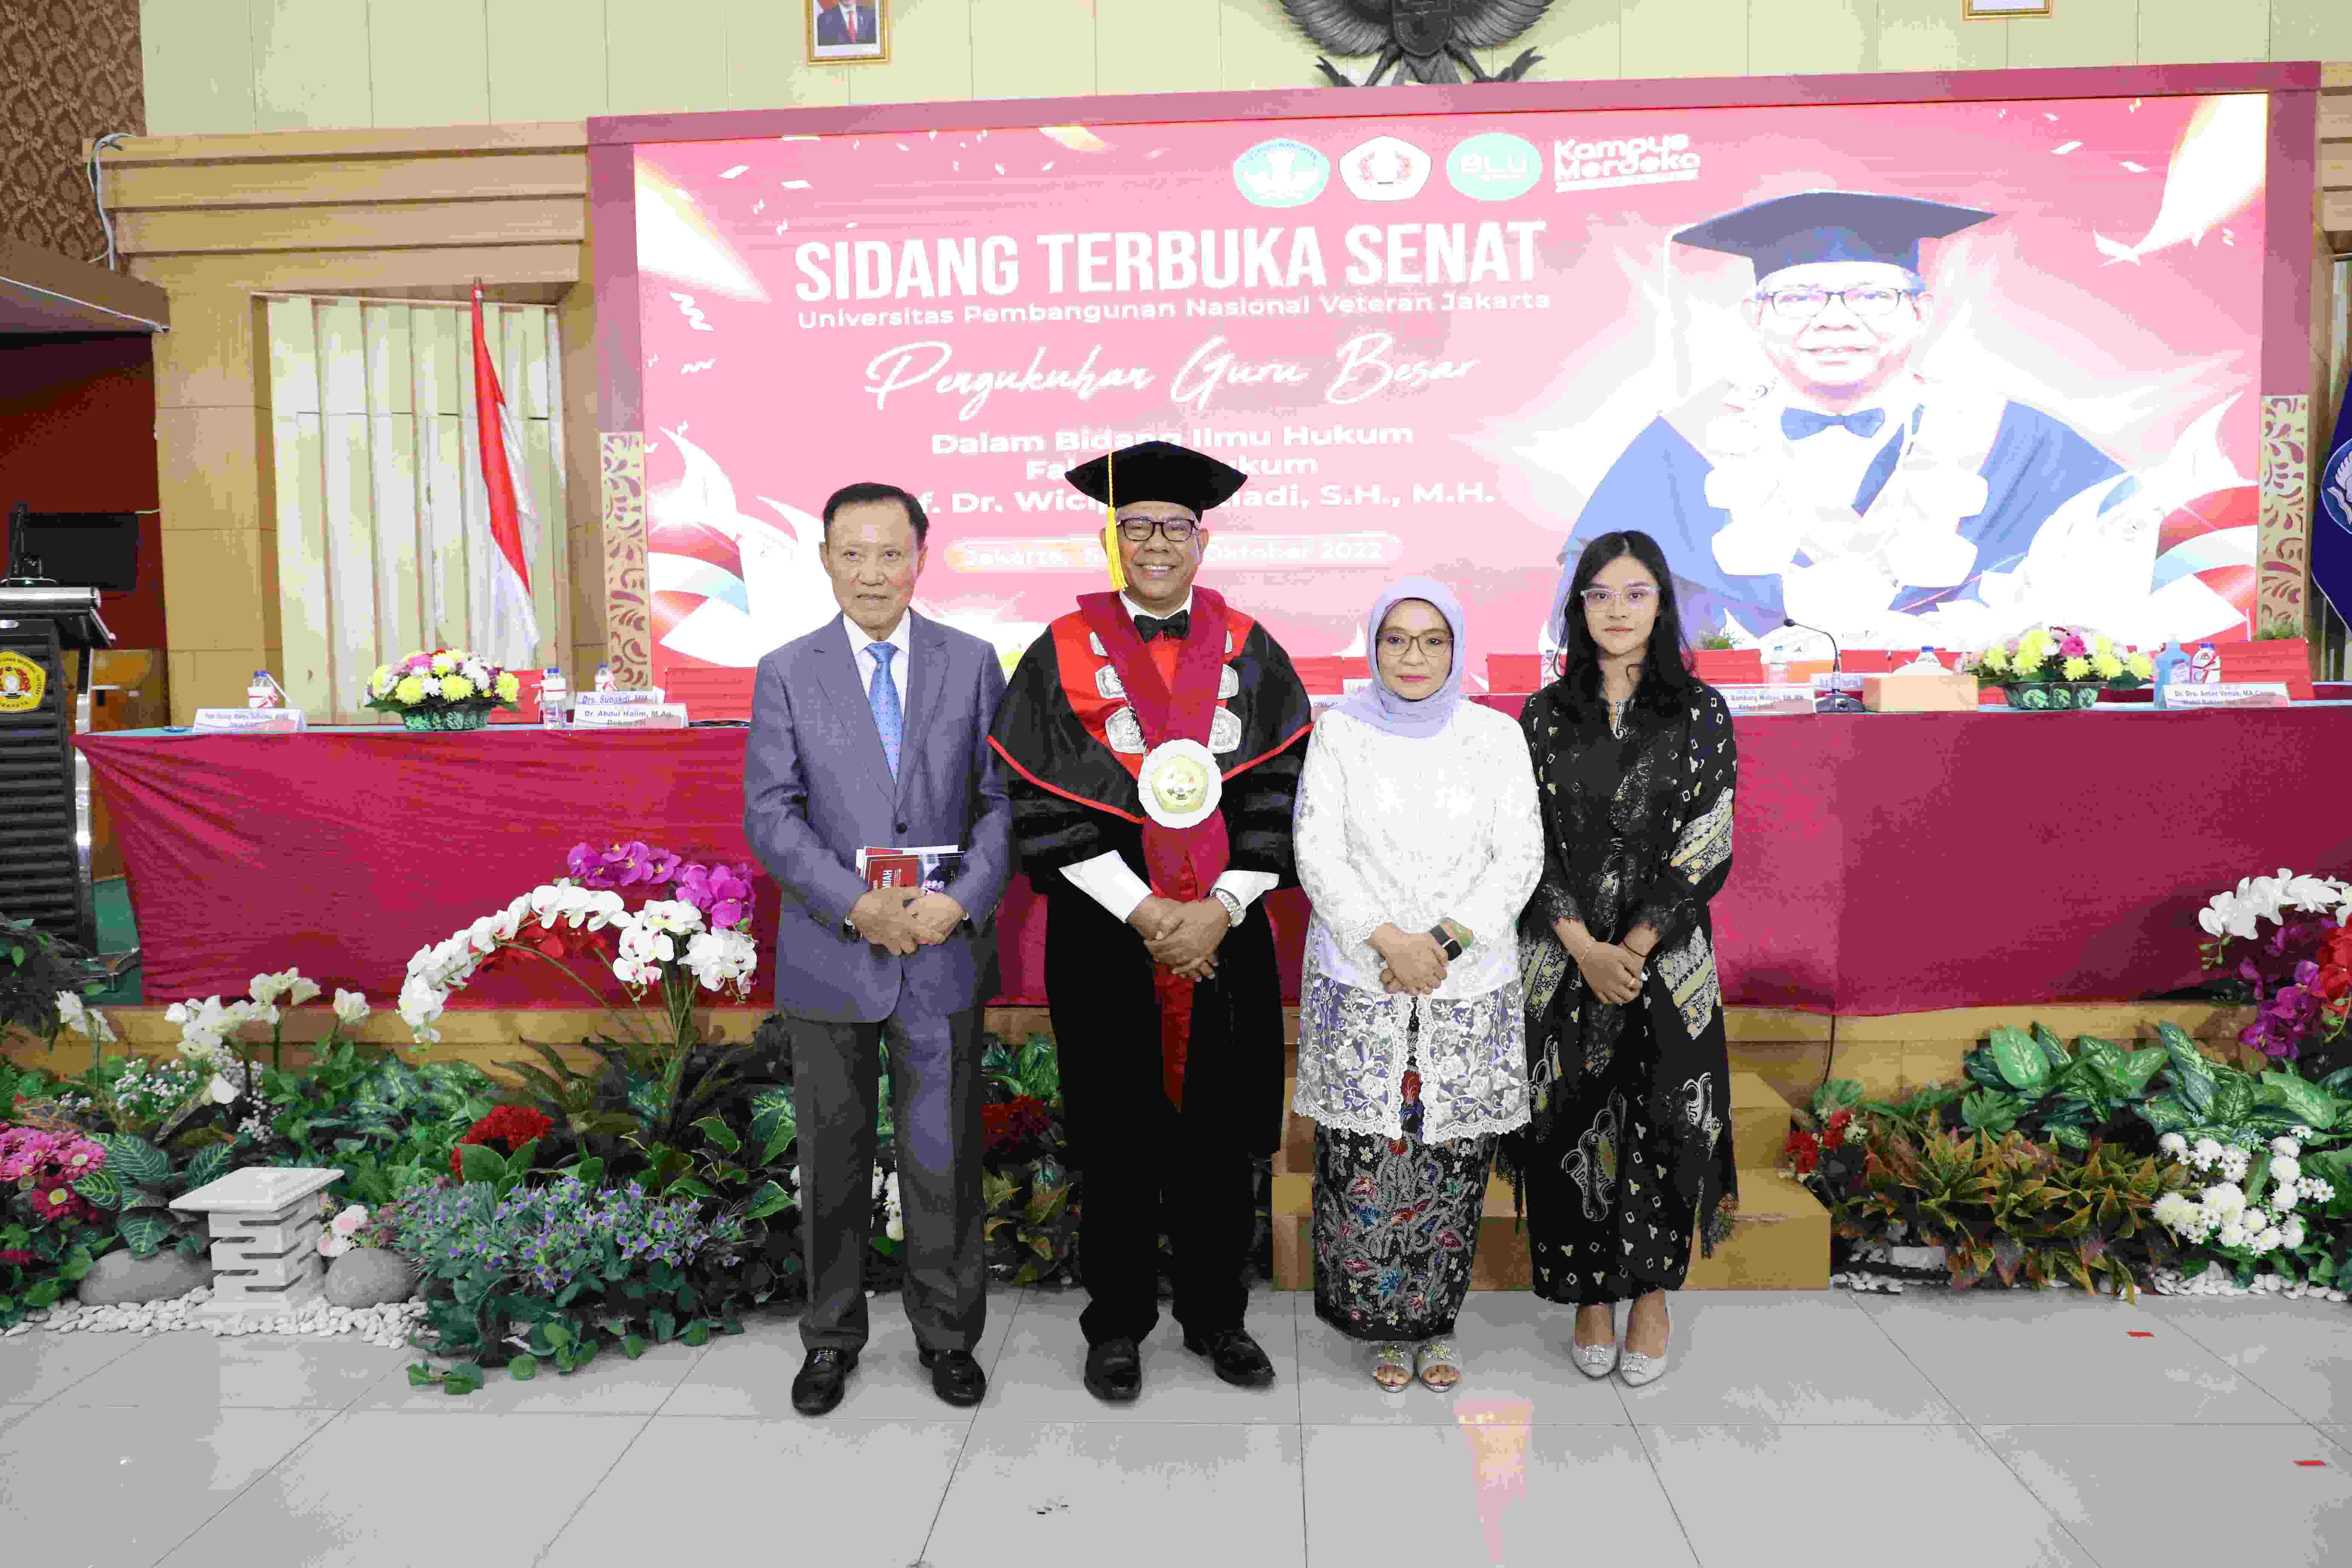 Pengukuhan Prof Dr Wicipto Setiadi SH MH Guru Besar bidang Ilmu Hukum Fakultas Hukum Universitas Pembangunan Nasional Veteran Jakarta (27)